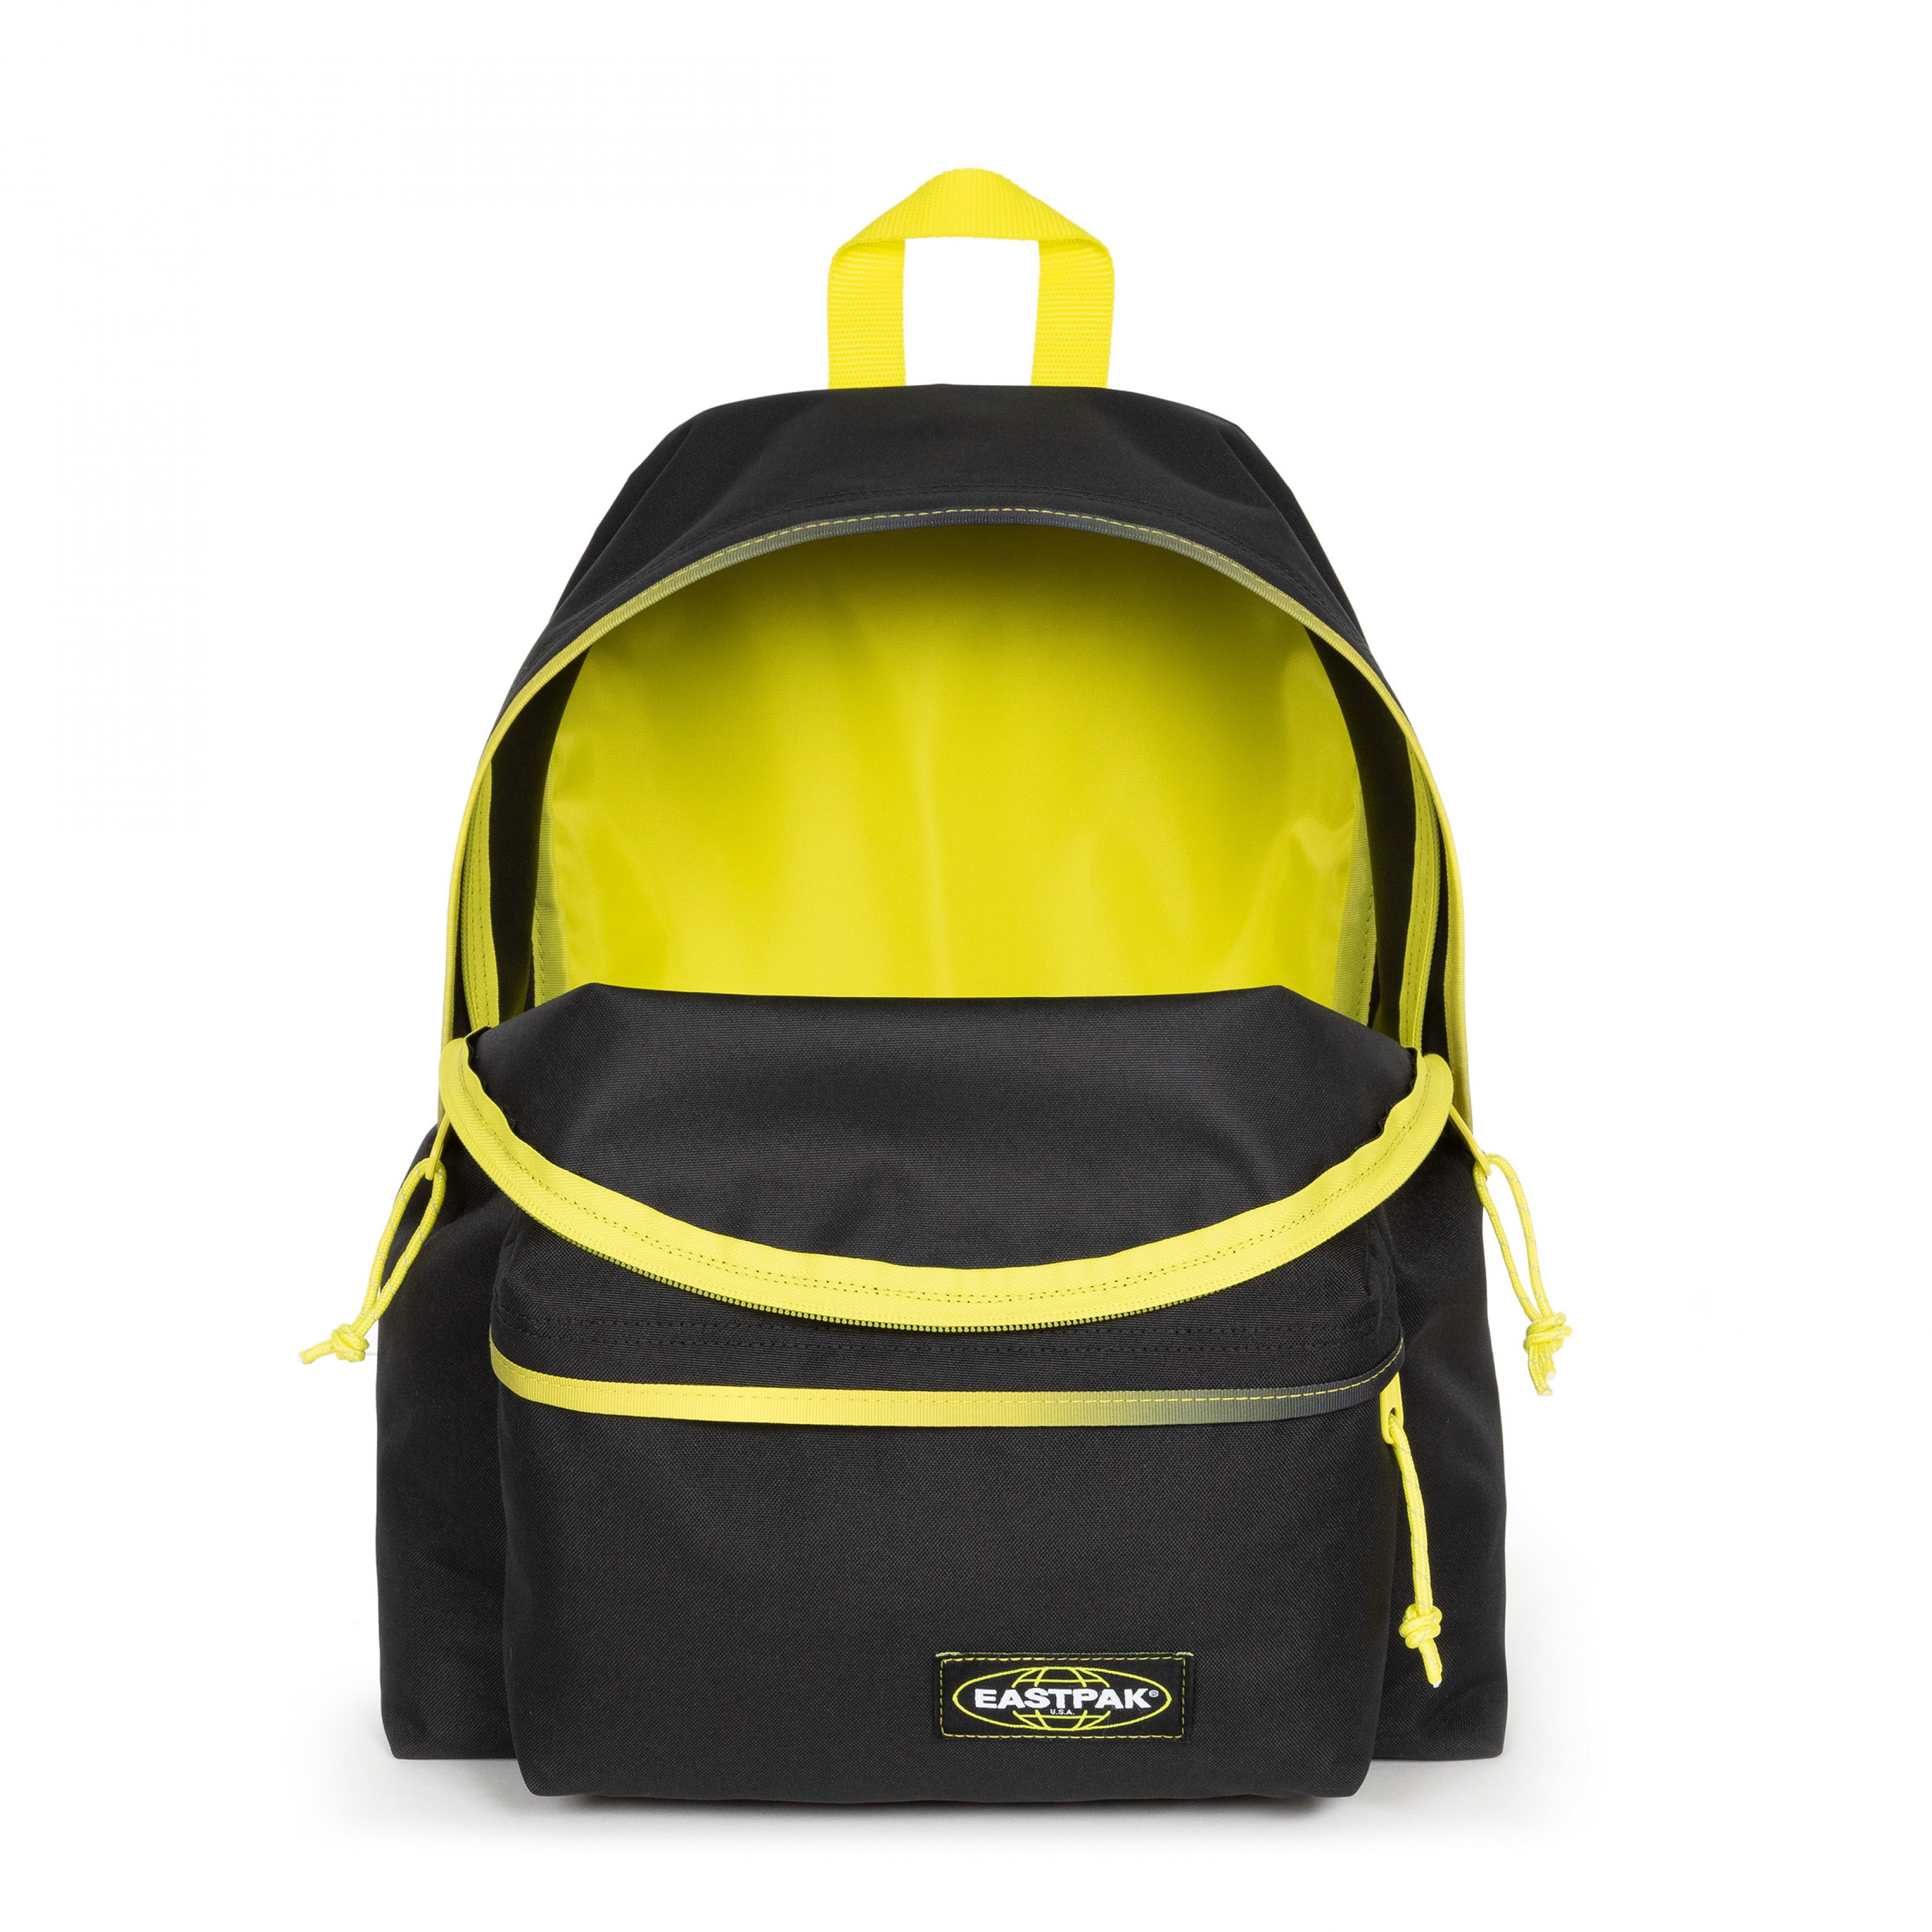 Eastpak - Padded Pak'r Kontrast Grade Lime Backpack, Black, large image number 1